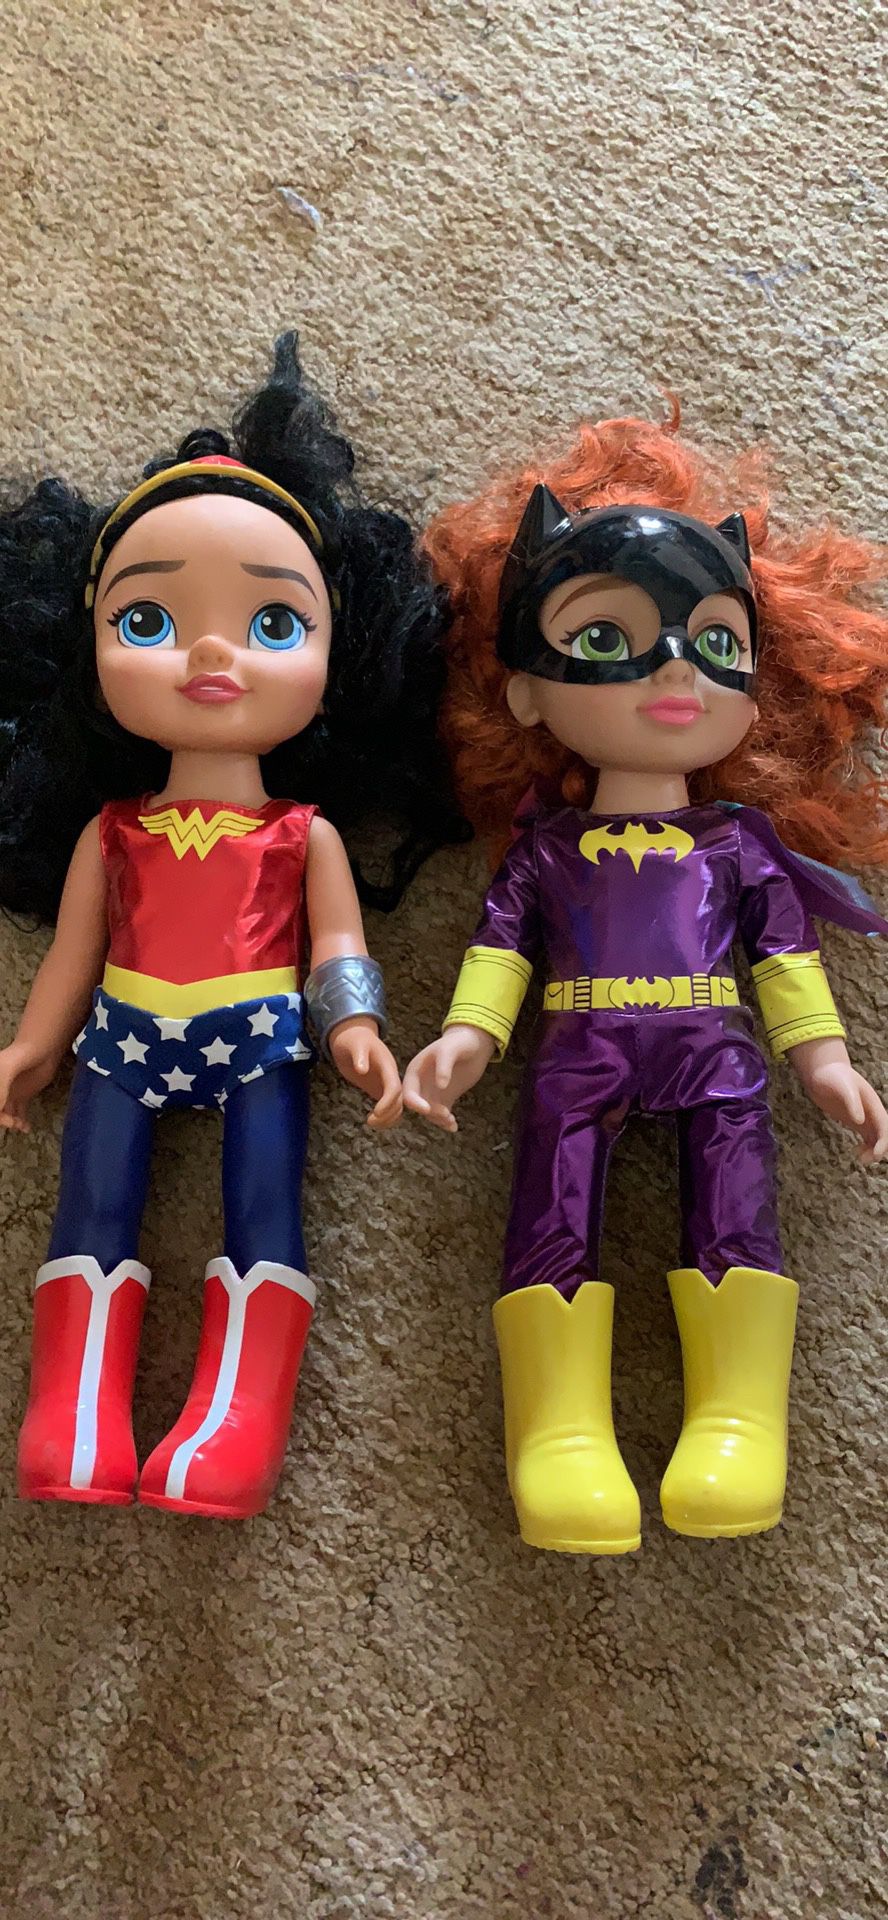 Superhero toys